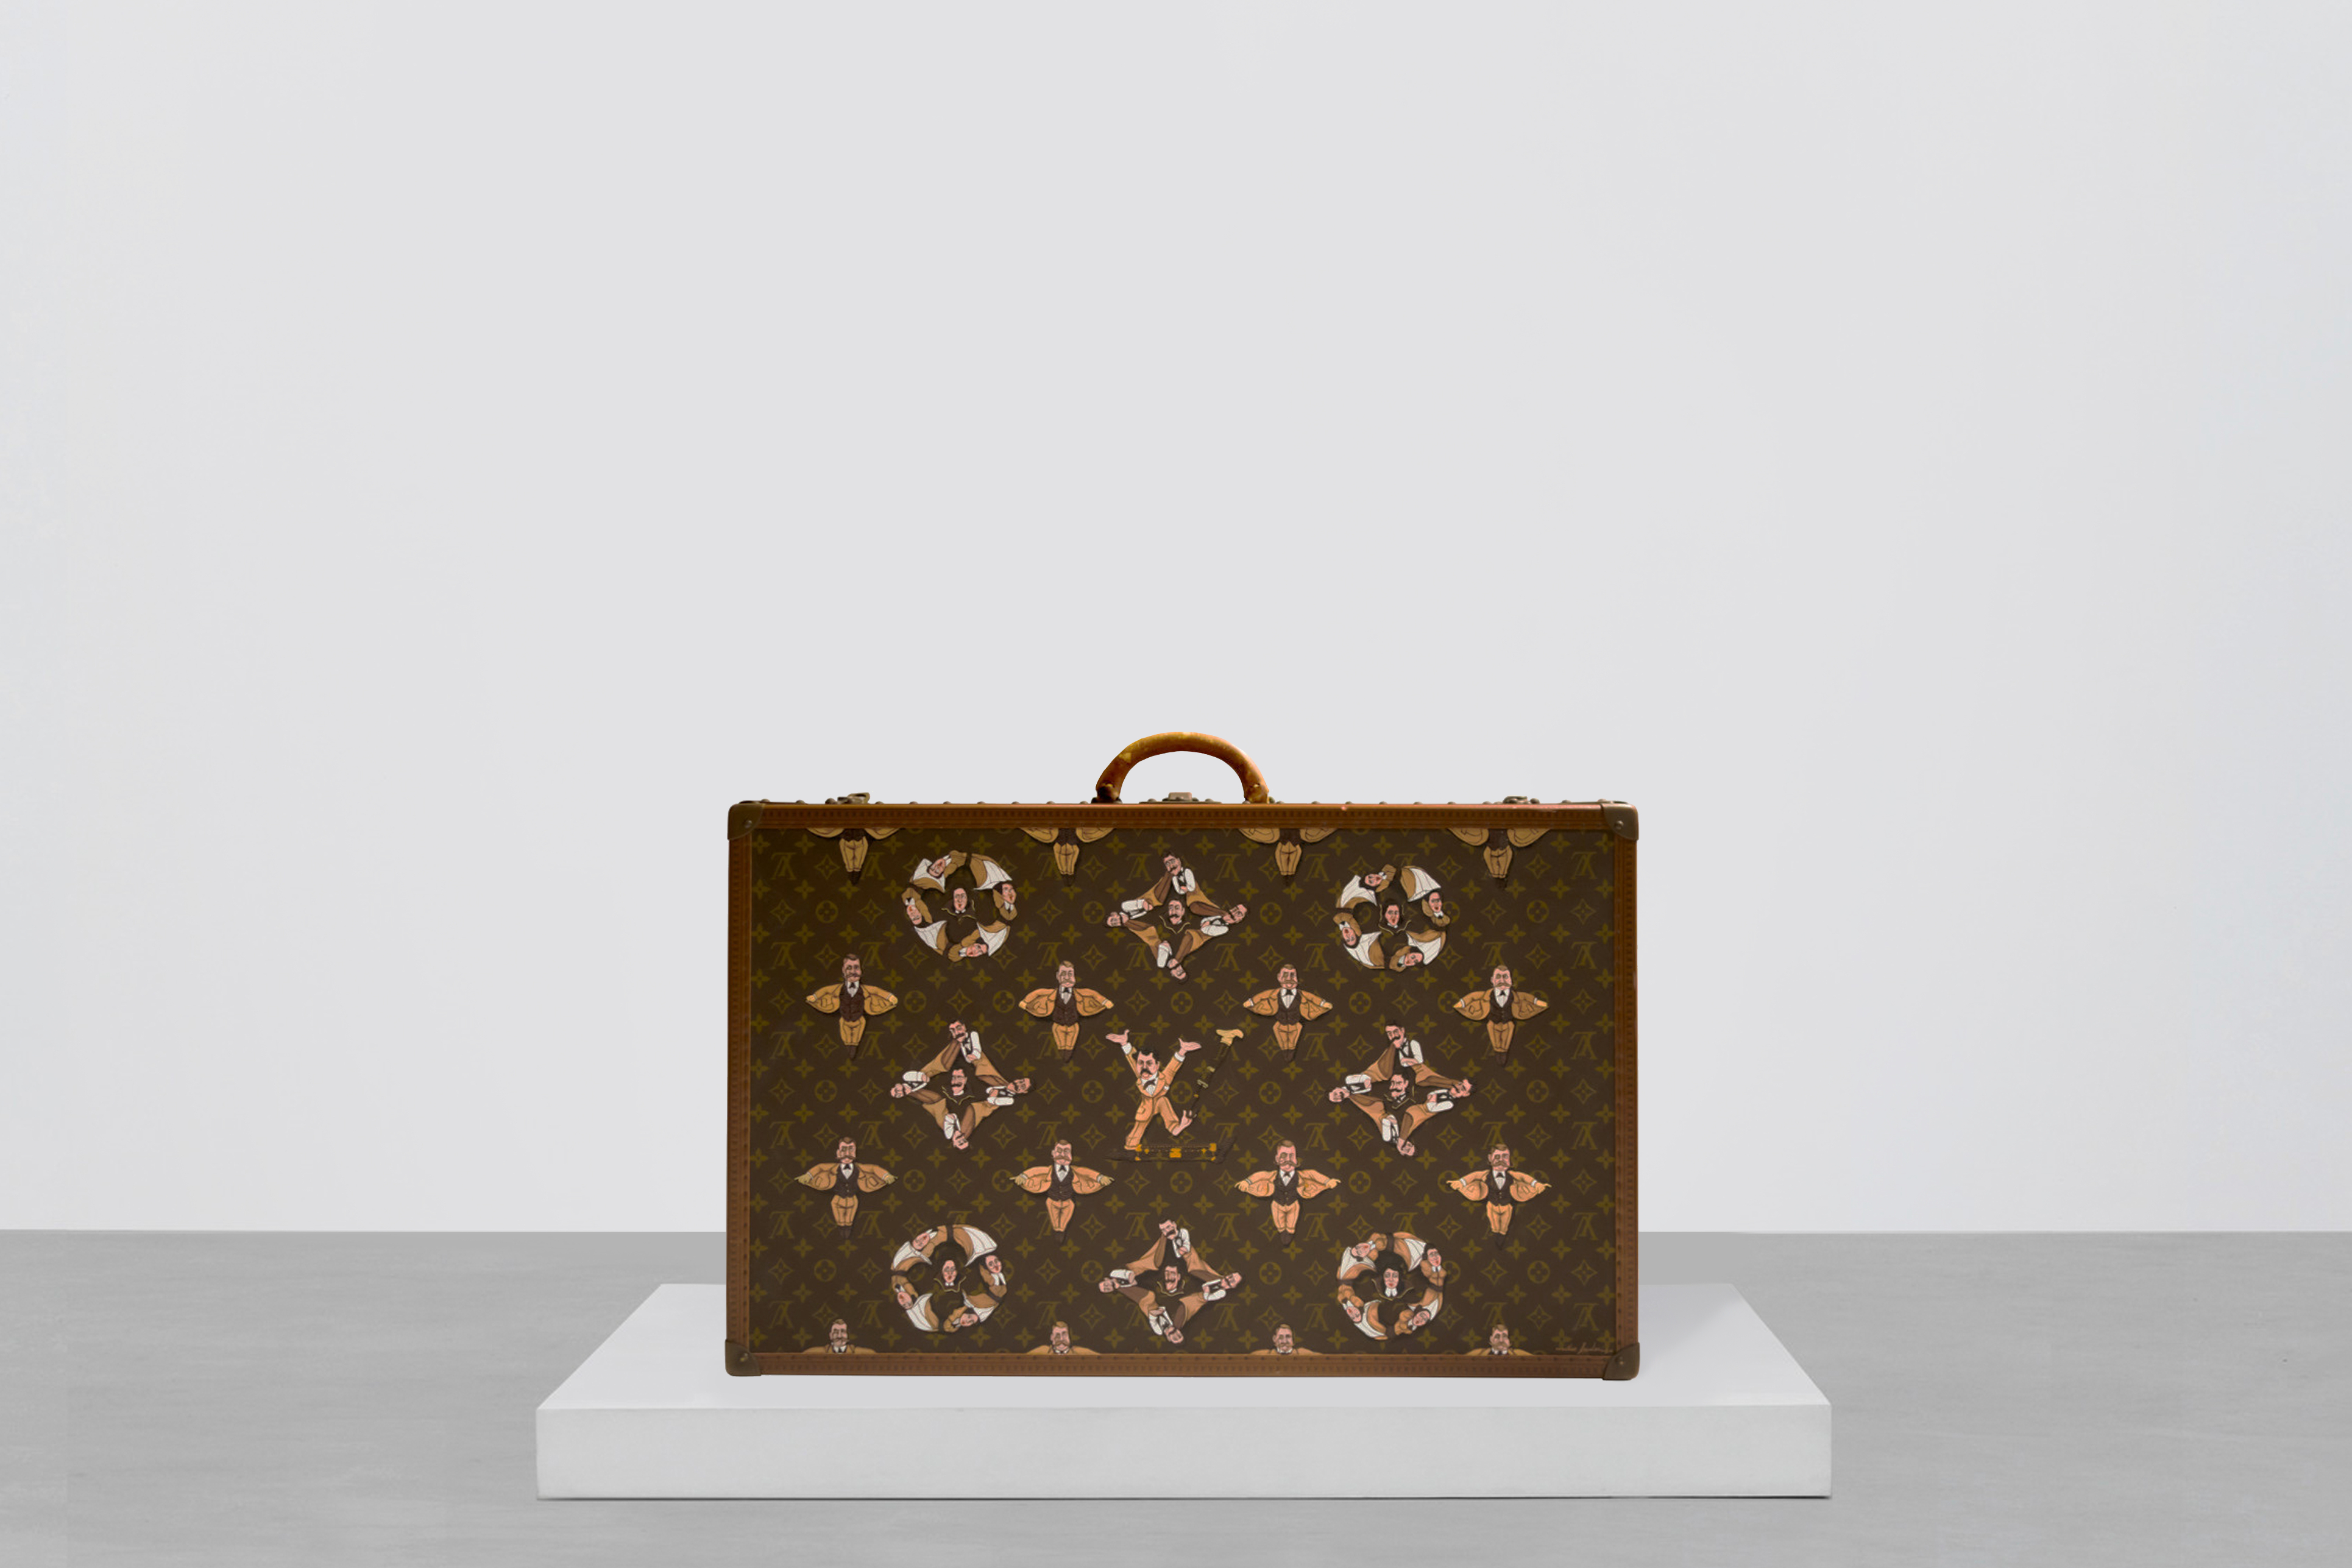 Mike Frederiqo 在紐約時裝周展出特製款 Louis Vuitton 皮箱，他認為融入創辦人本身的圖像、而非抽象字母，顯然是更能代表品牌的象徵。